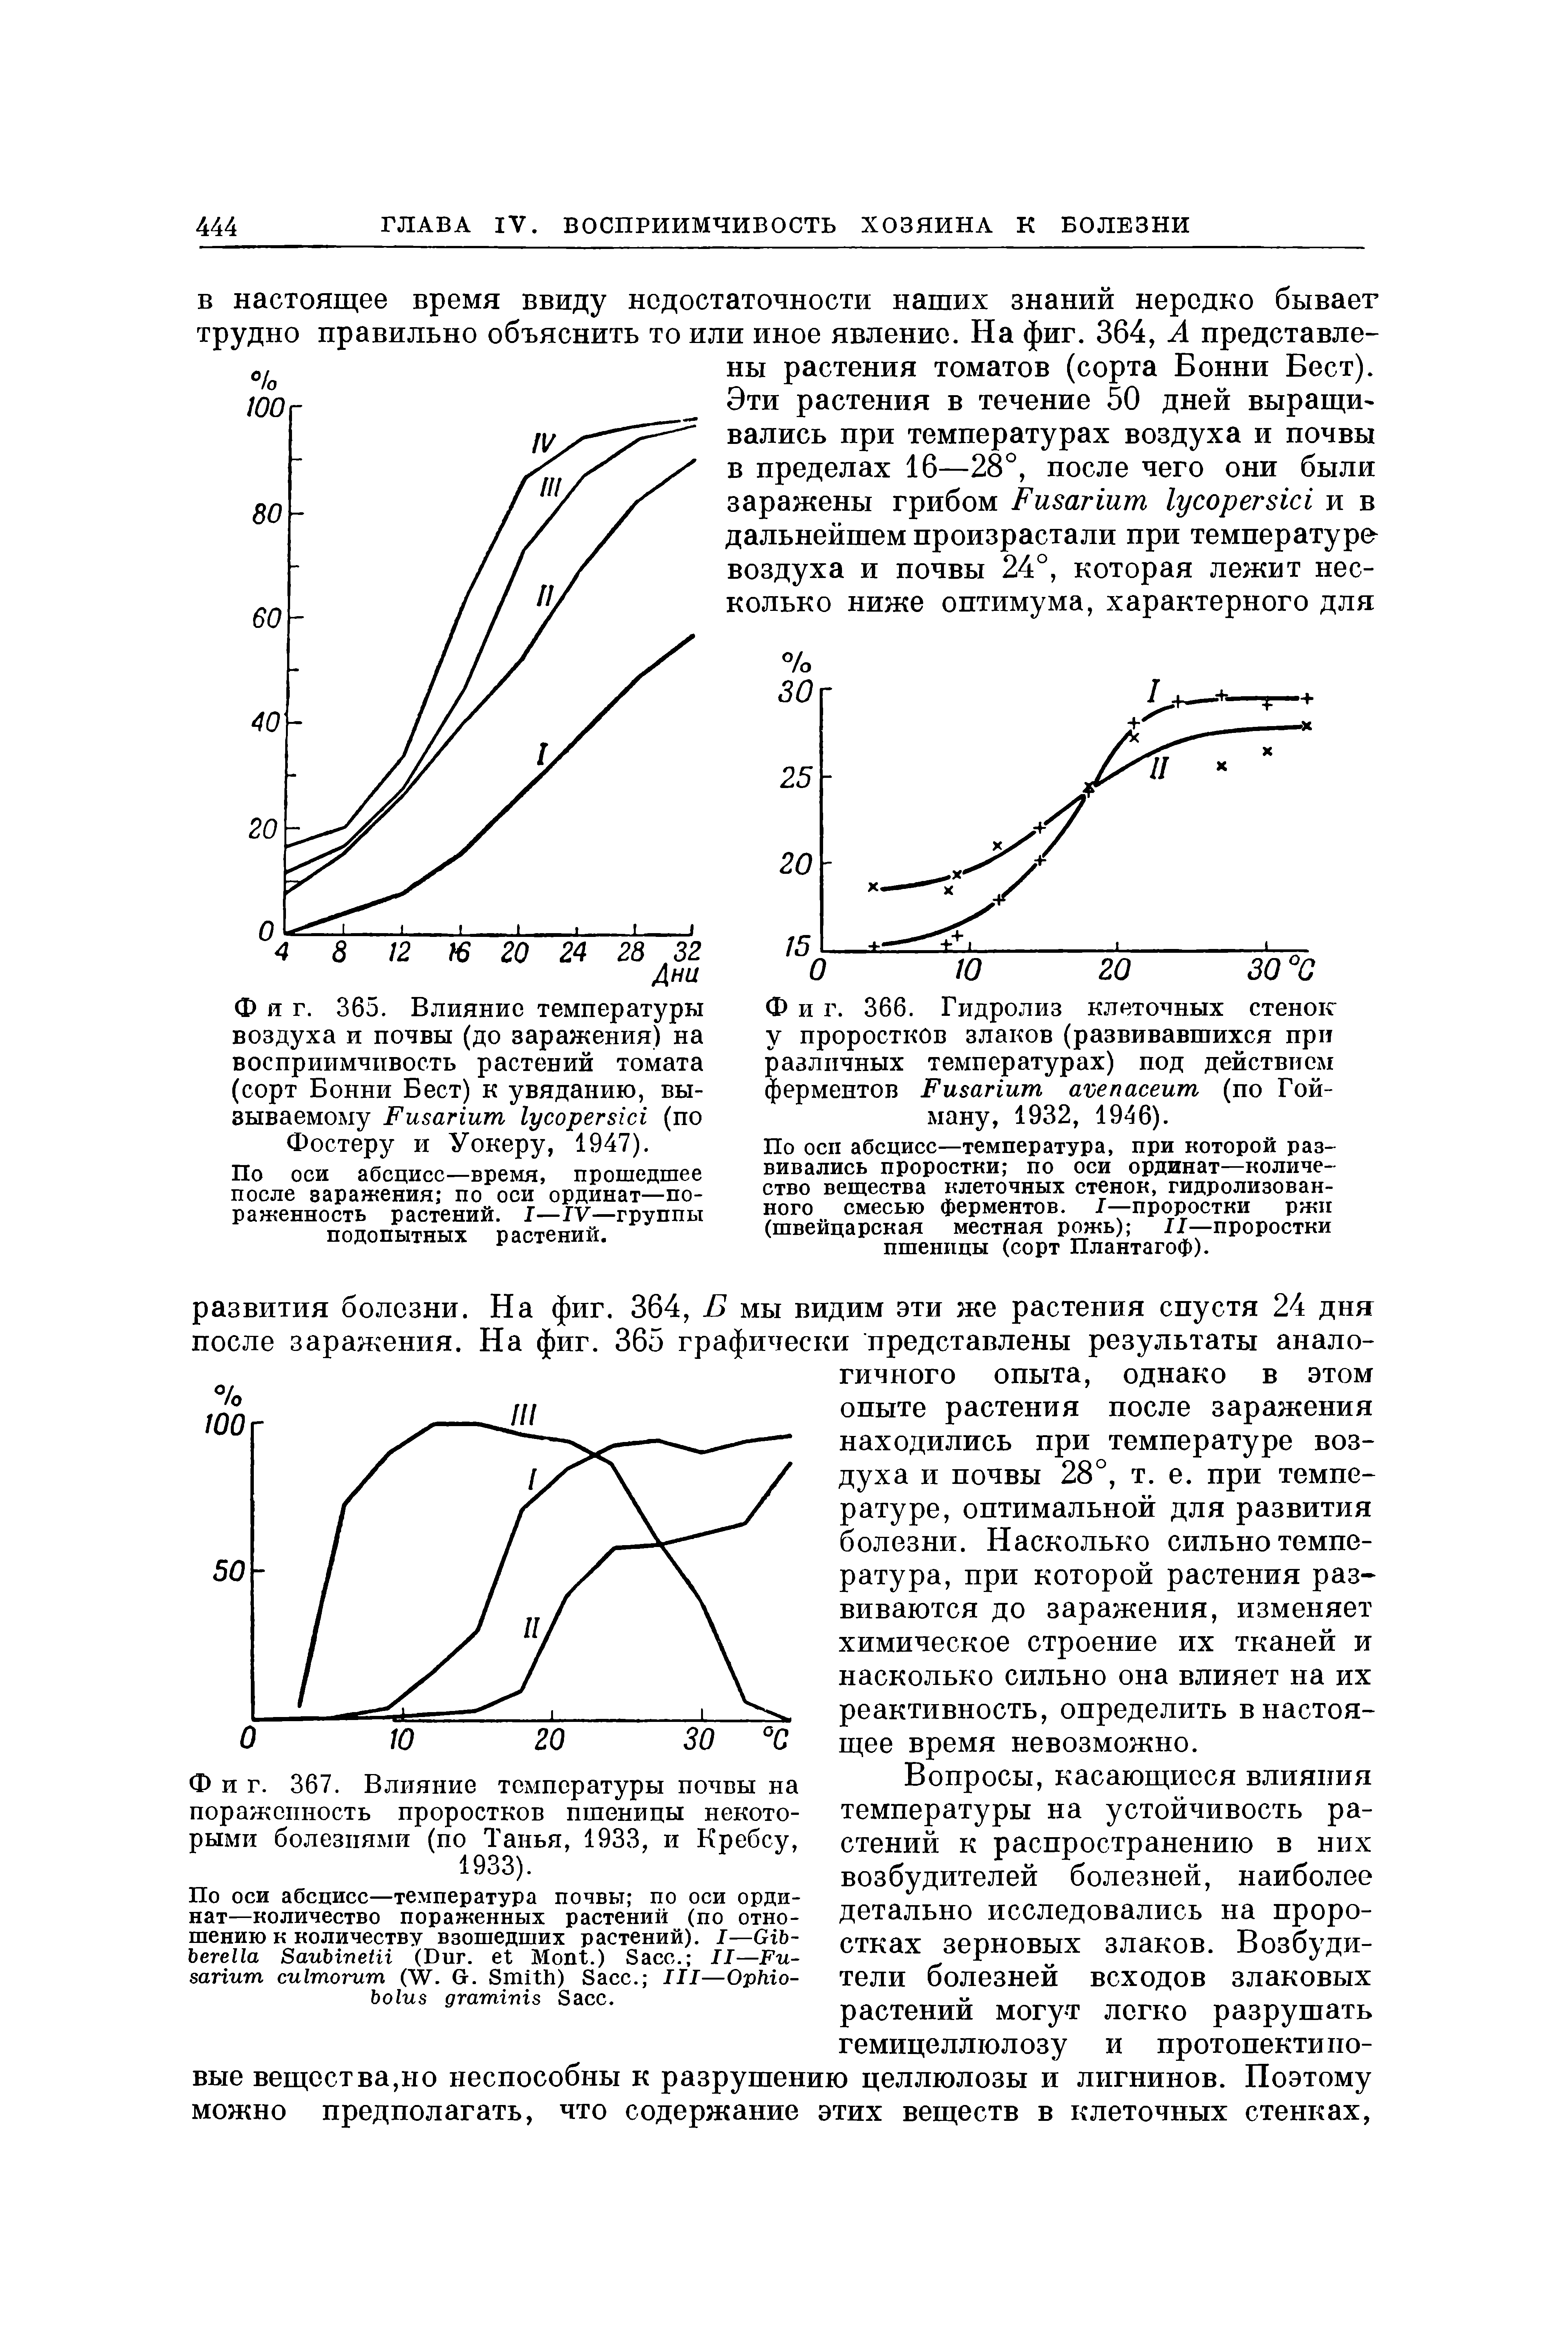 Фиг. 367. Влияние температуры почвы на пораженность проростков пшеницы некоторыми болезнями (по Танья, 1933, и Кребсу, 1933).